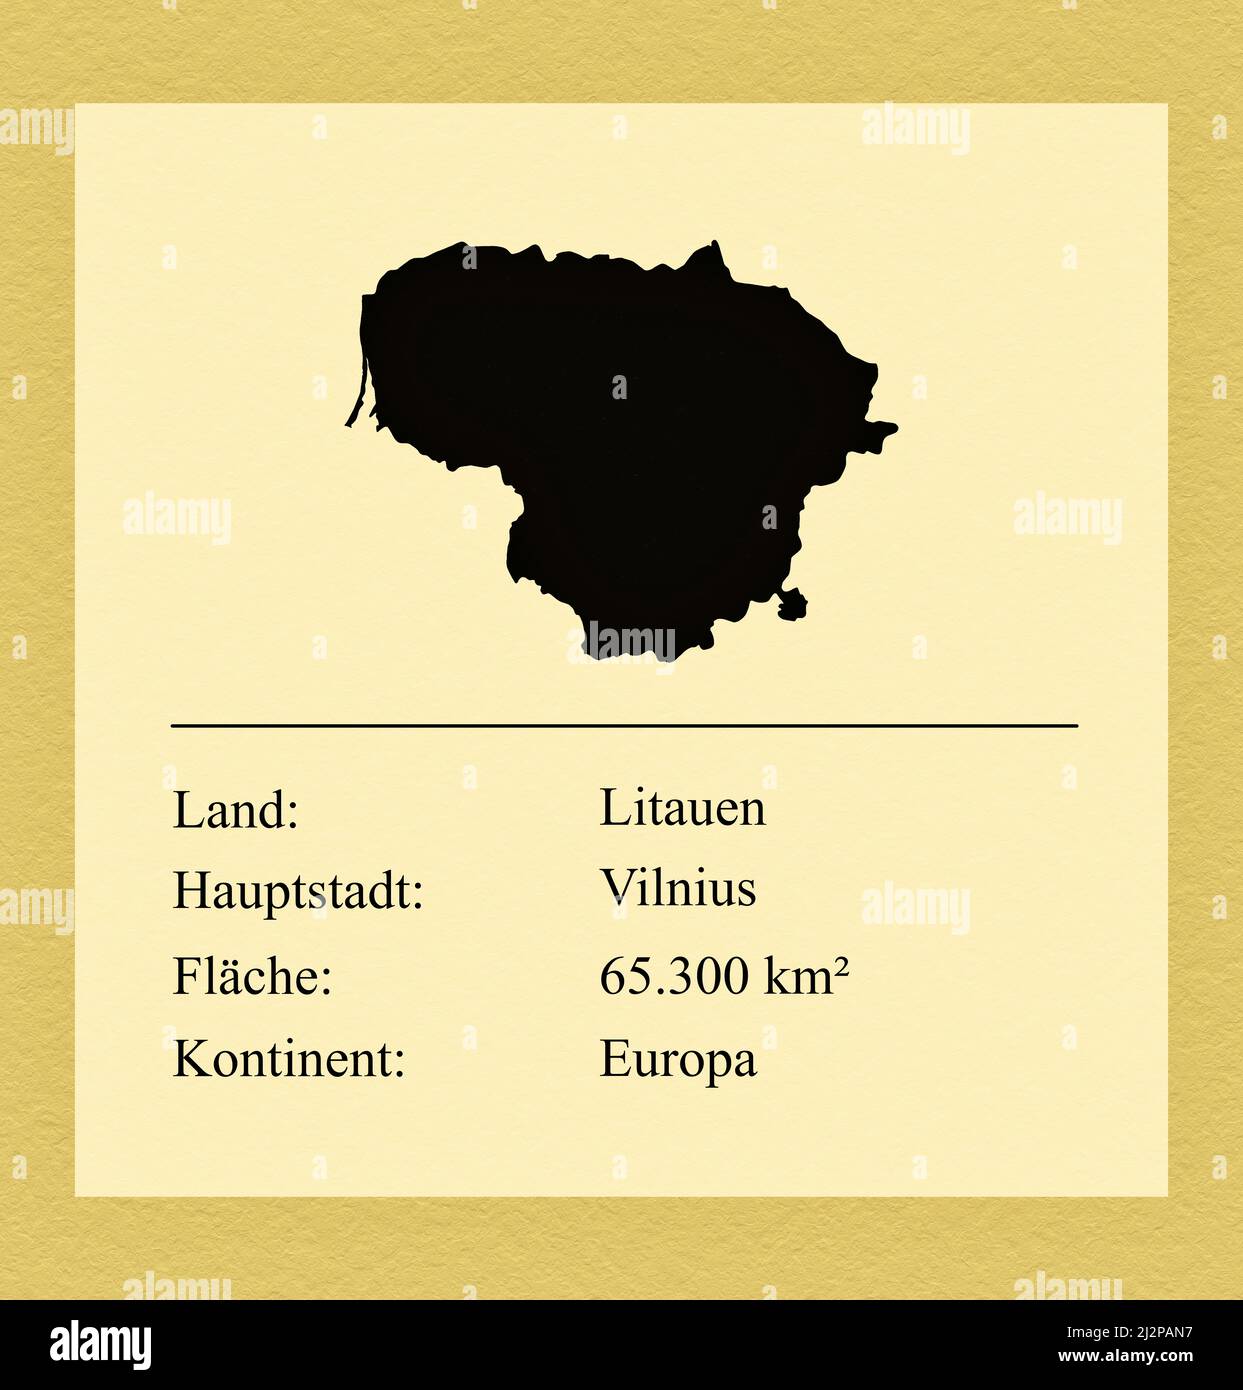 Umrisse des Landes Litauen, darunter ein kleiner Steckbrief mit Ländernamen, Hauptstadt, Fläche und Kontinent Foto de stock